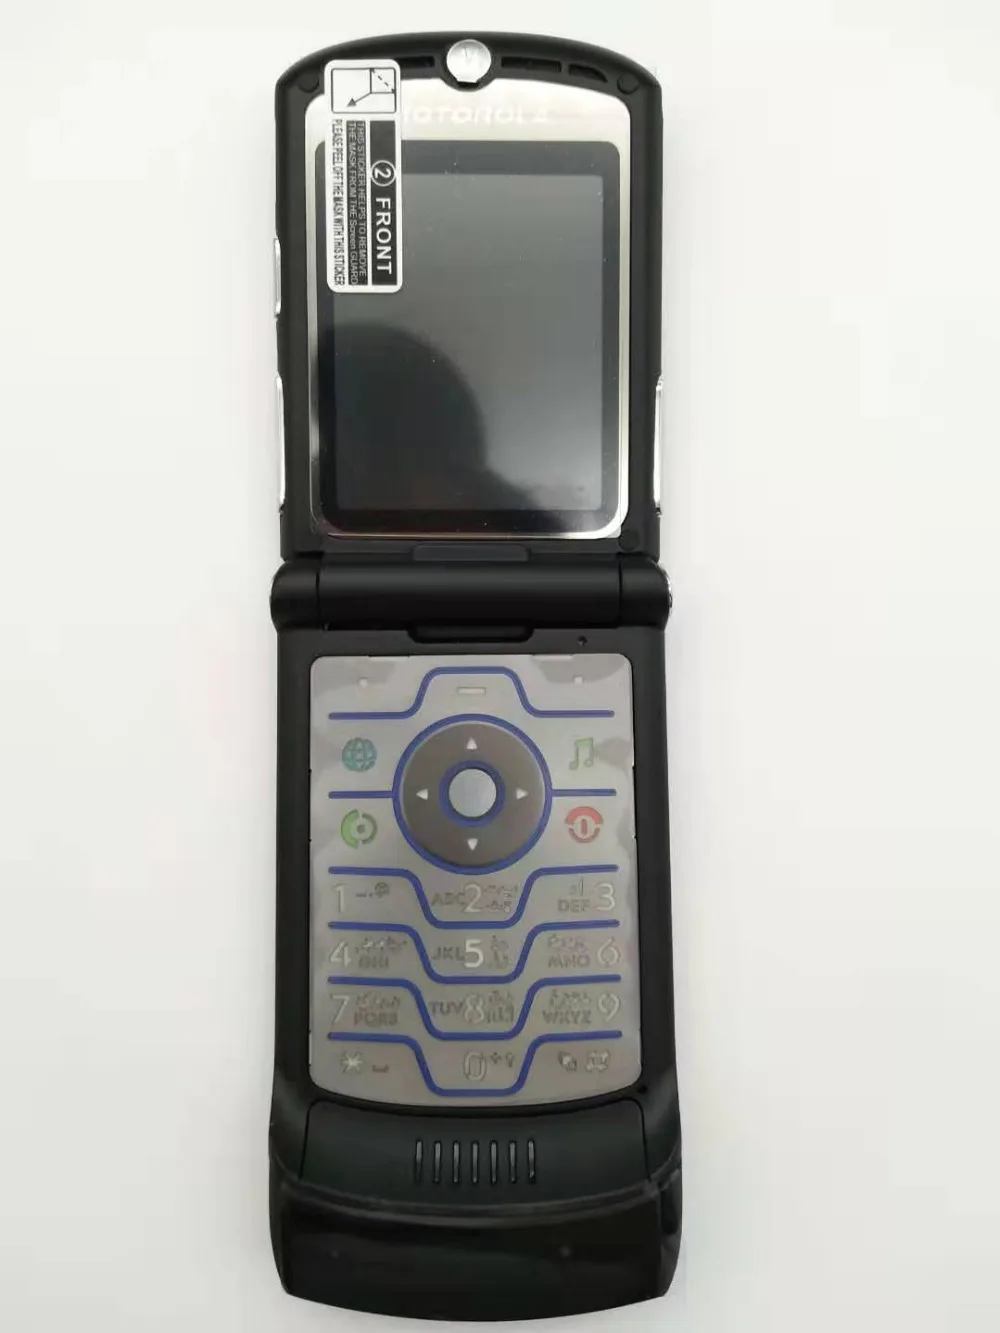 Хорошее качество оригинальная мировая версия флип GSM Quad Band Motorola Razr V3 мобильный телефон один год гарантии